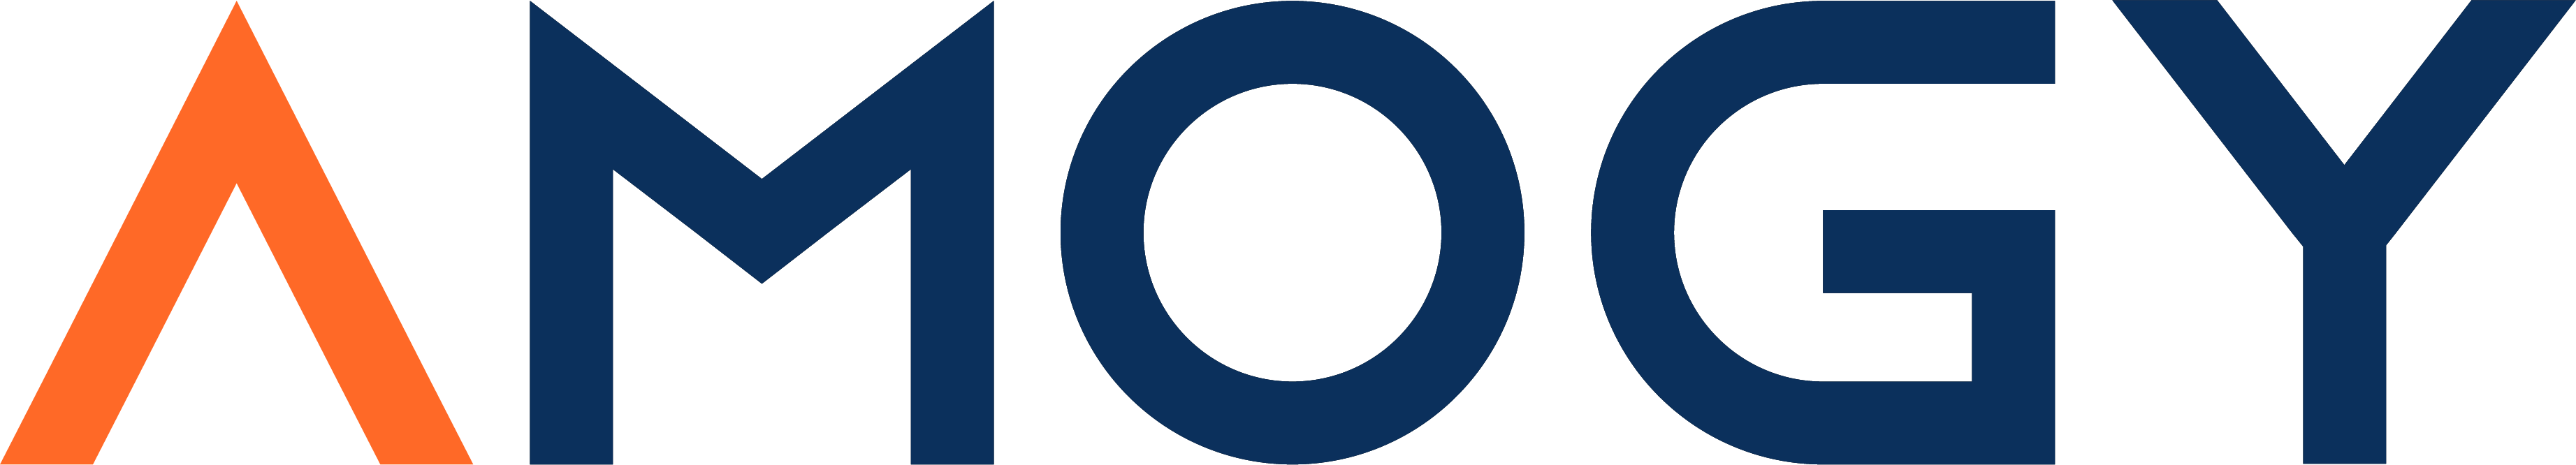 Amogy Logo